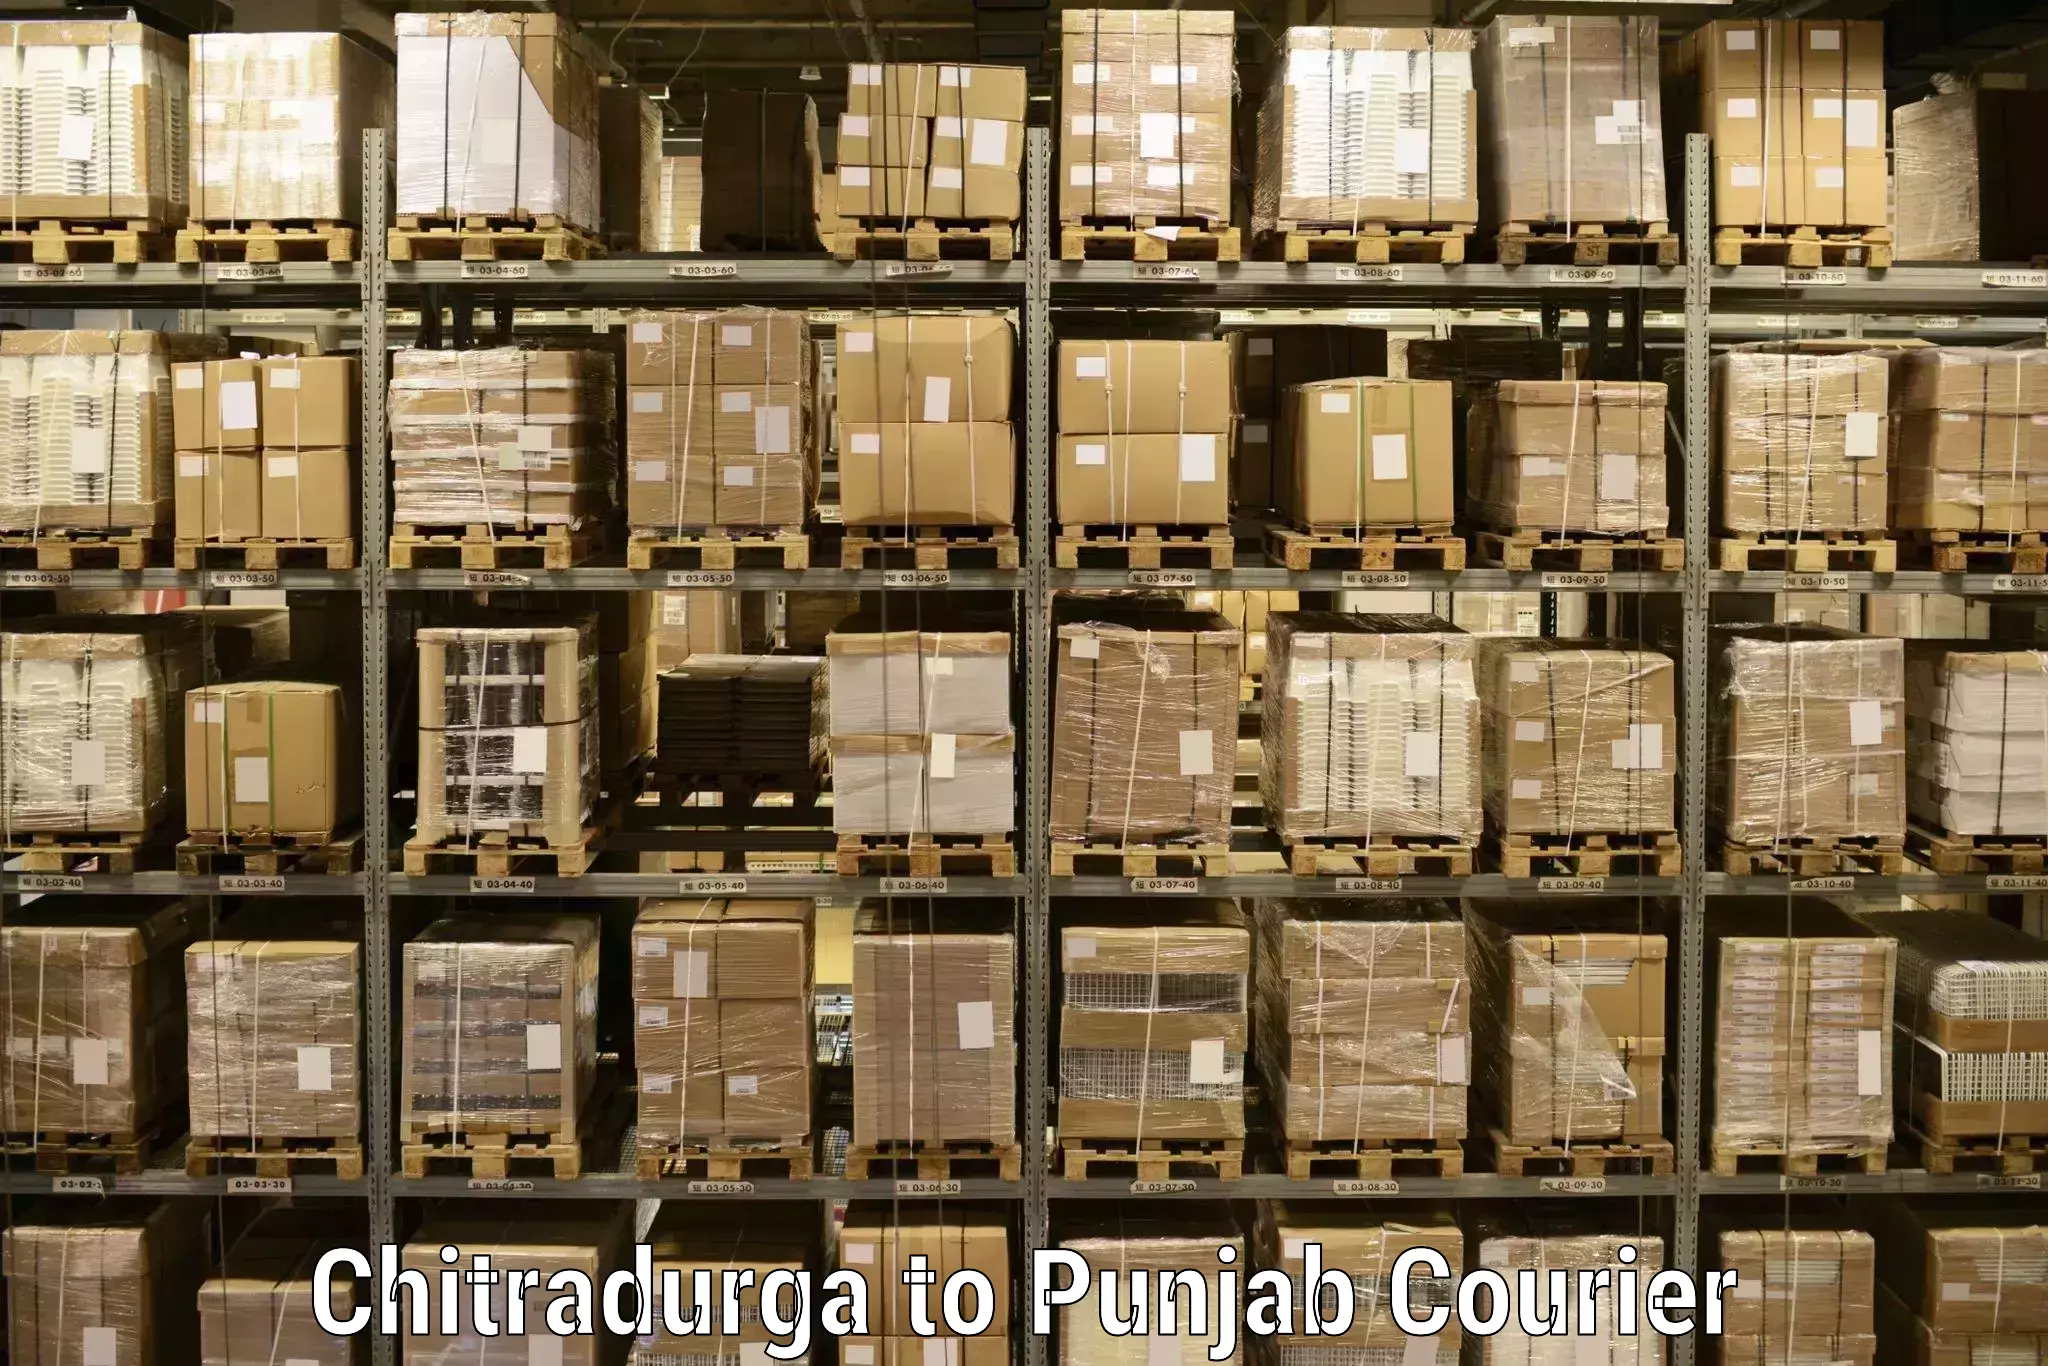 Express delivery capabilities Chitradurga to Pathankot